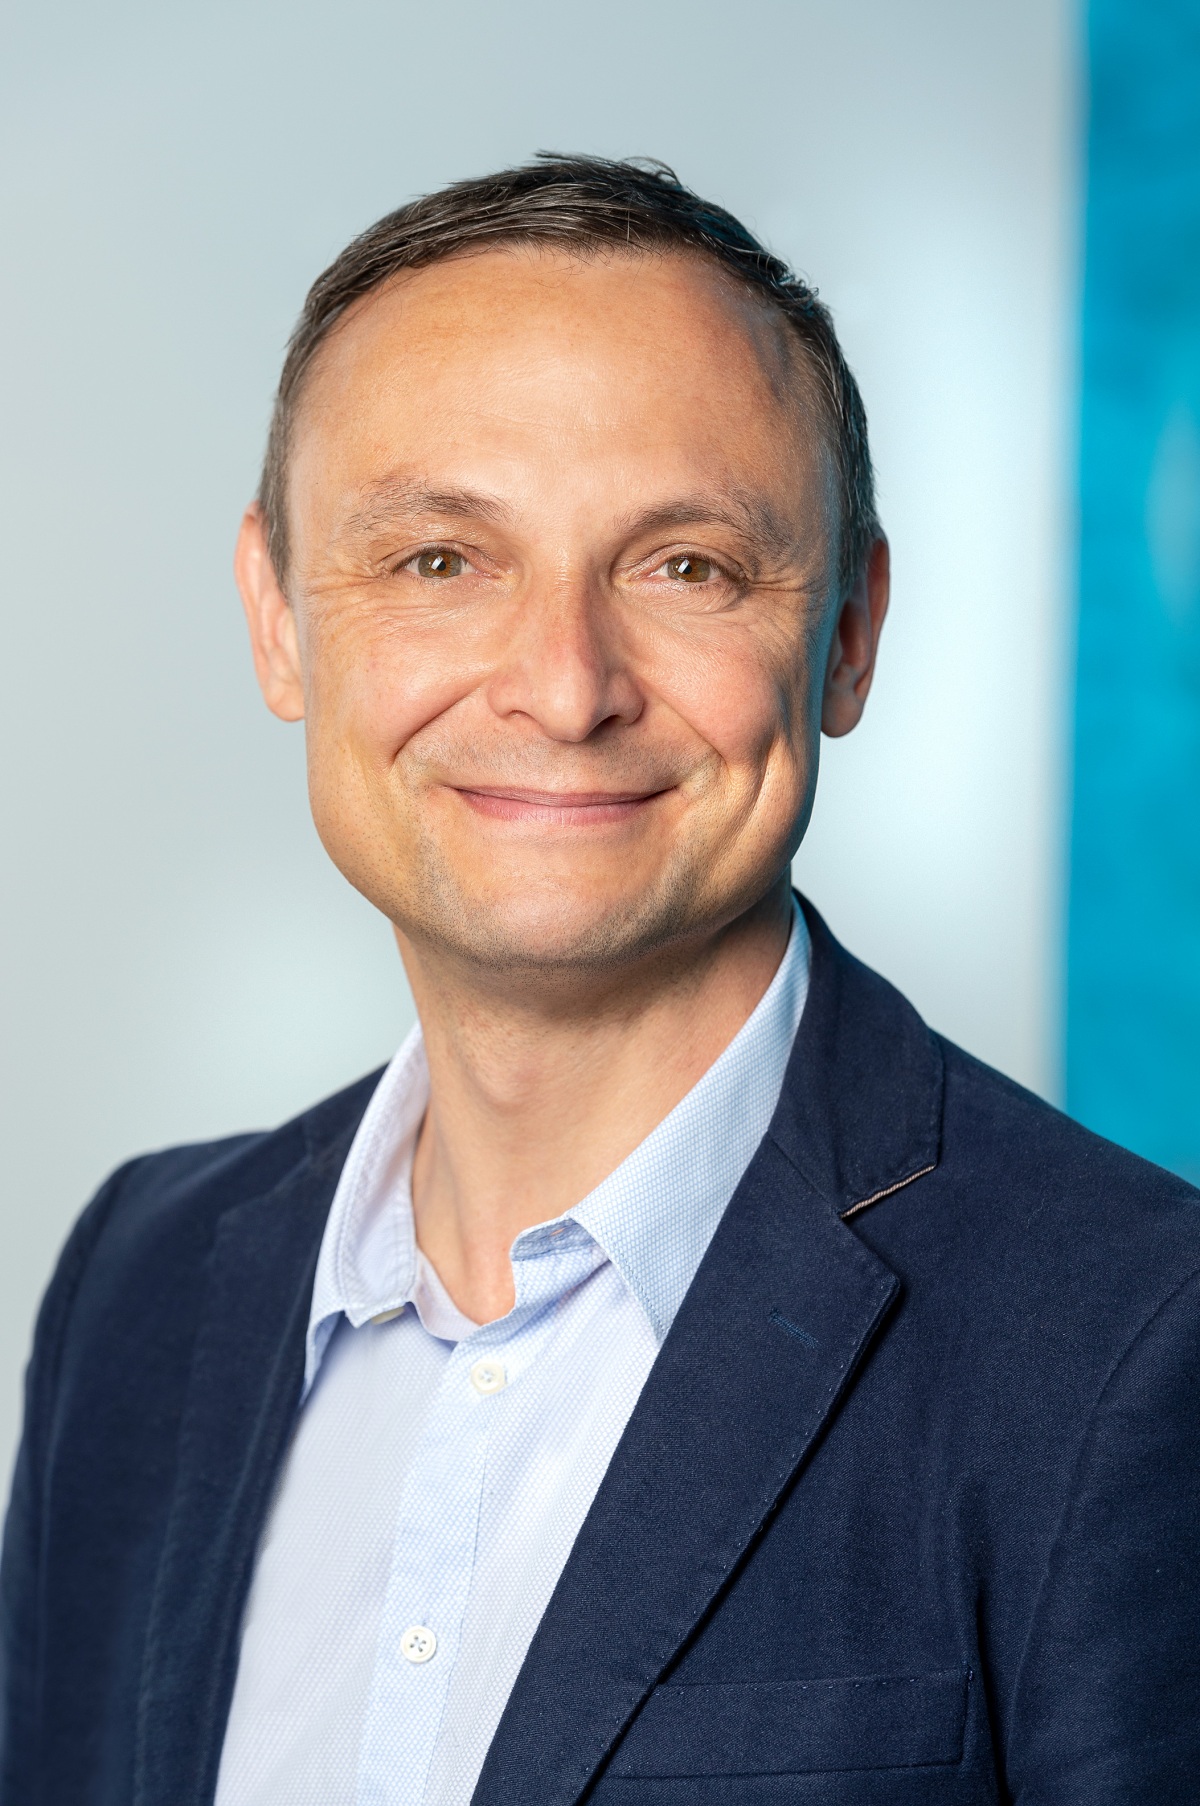  Markus Schwarzenböck, Leiter Konzernbereich Personal, TÜV SÜD AG